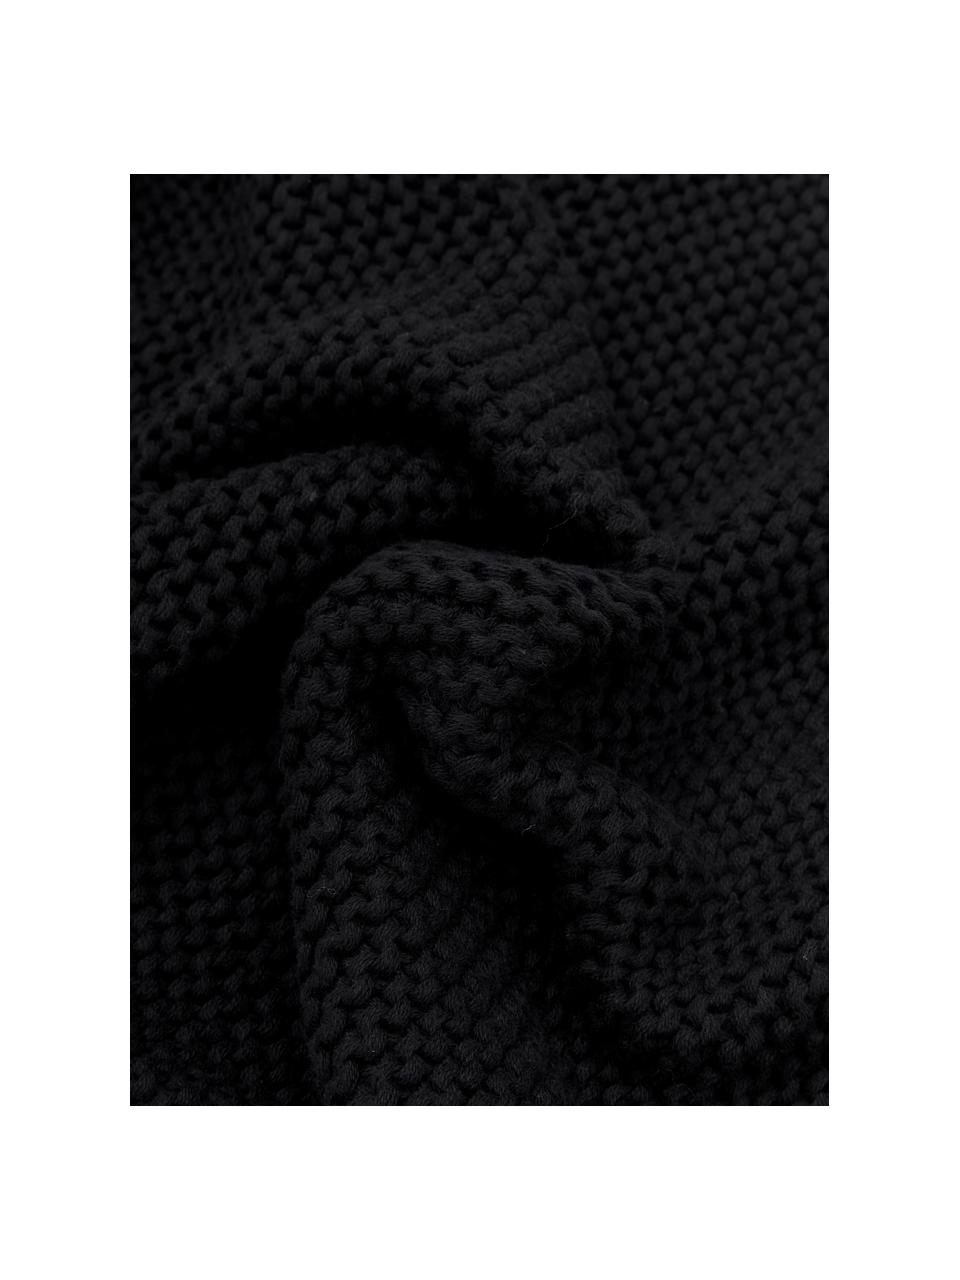 Federa arredo a maglia in cotone biologico nero Adalyn, 100% cotone biologico, certificato GOTS, Nero, Larg. 40 x Lung. 40 cm